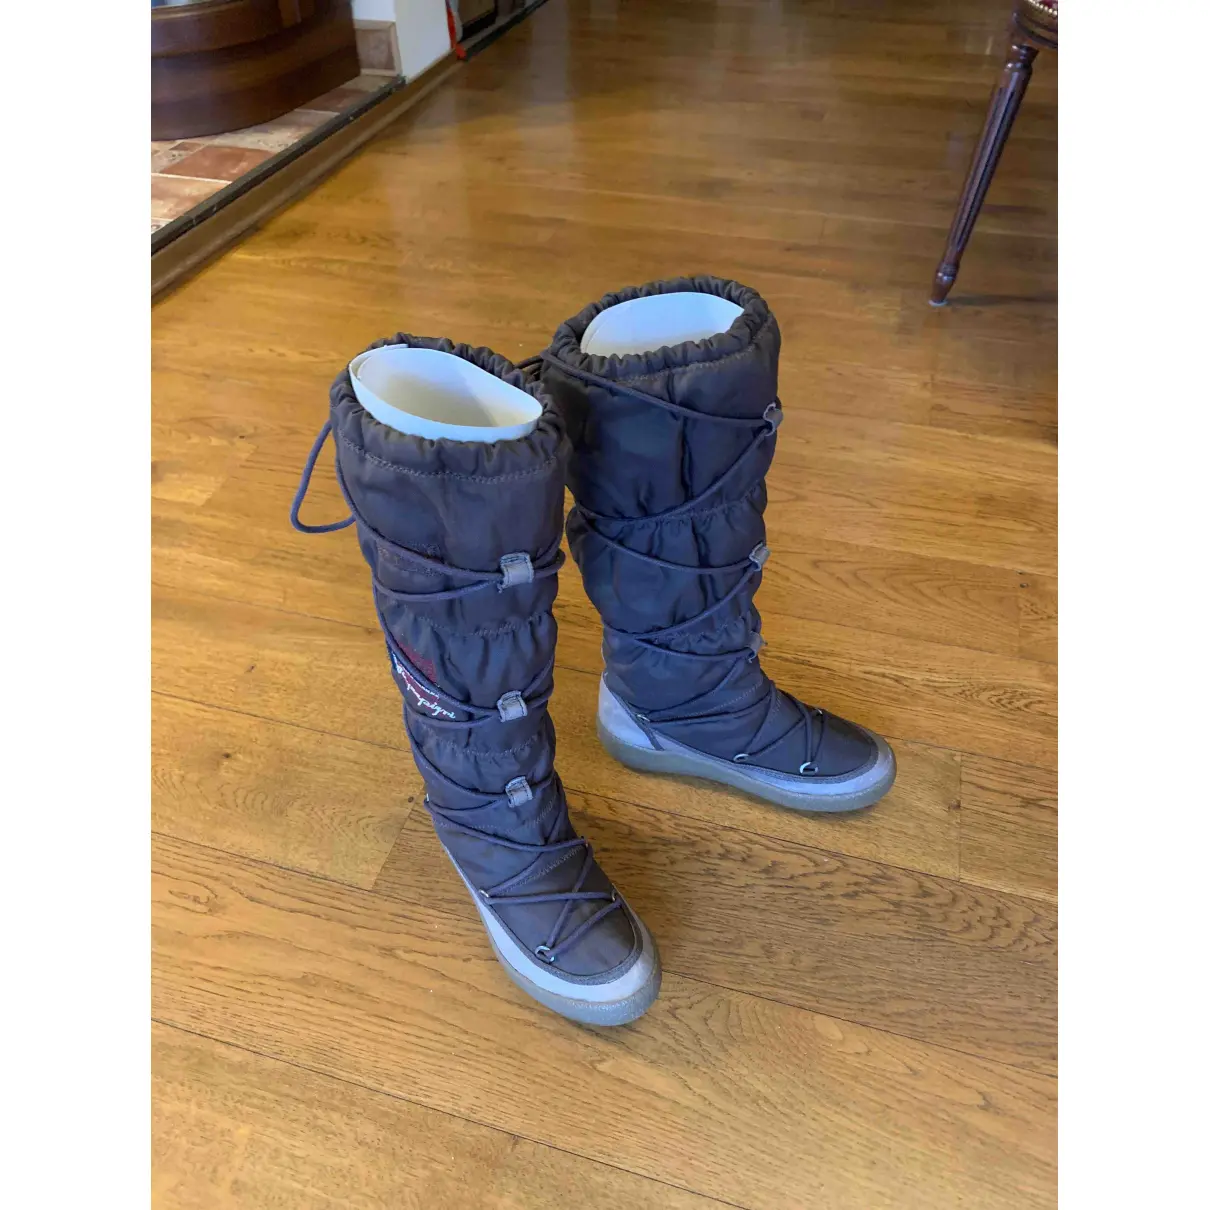 Buy Napapijri Snow boots online